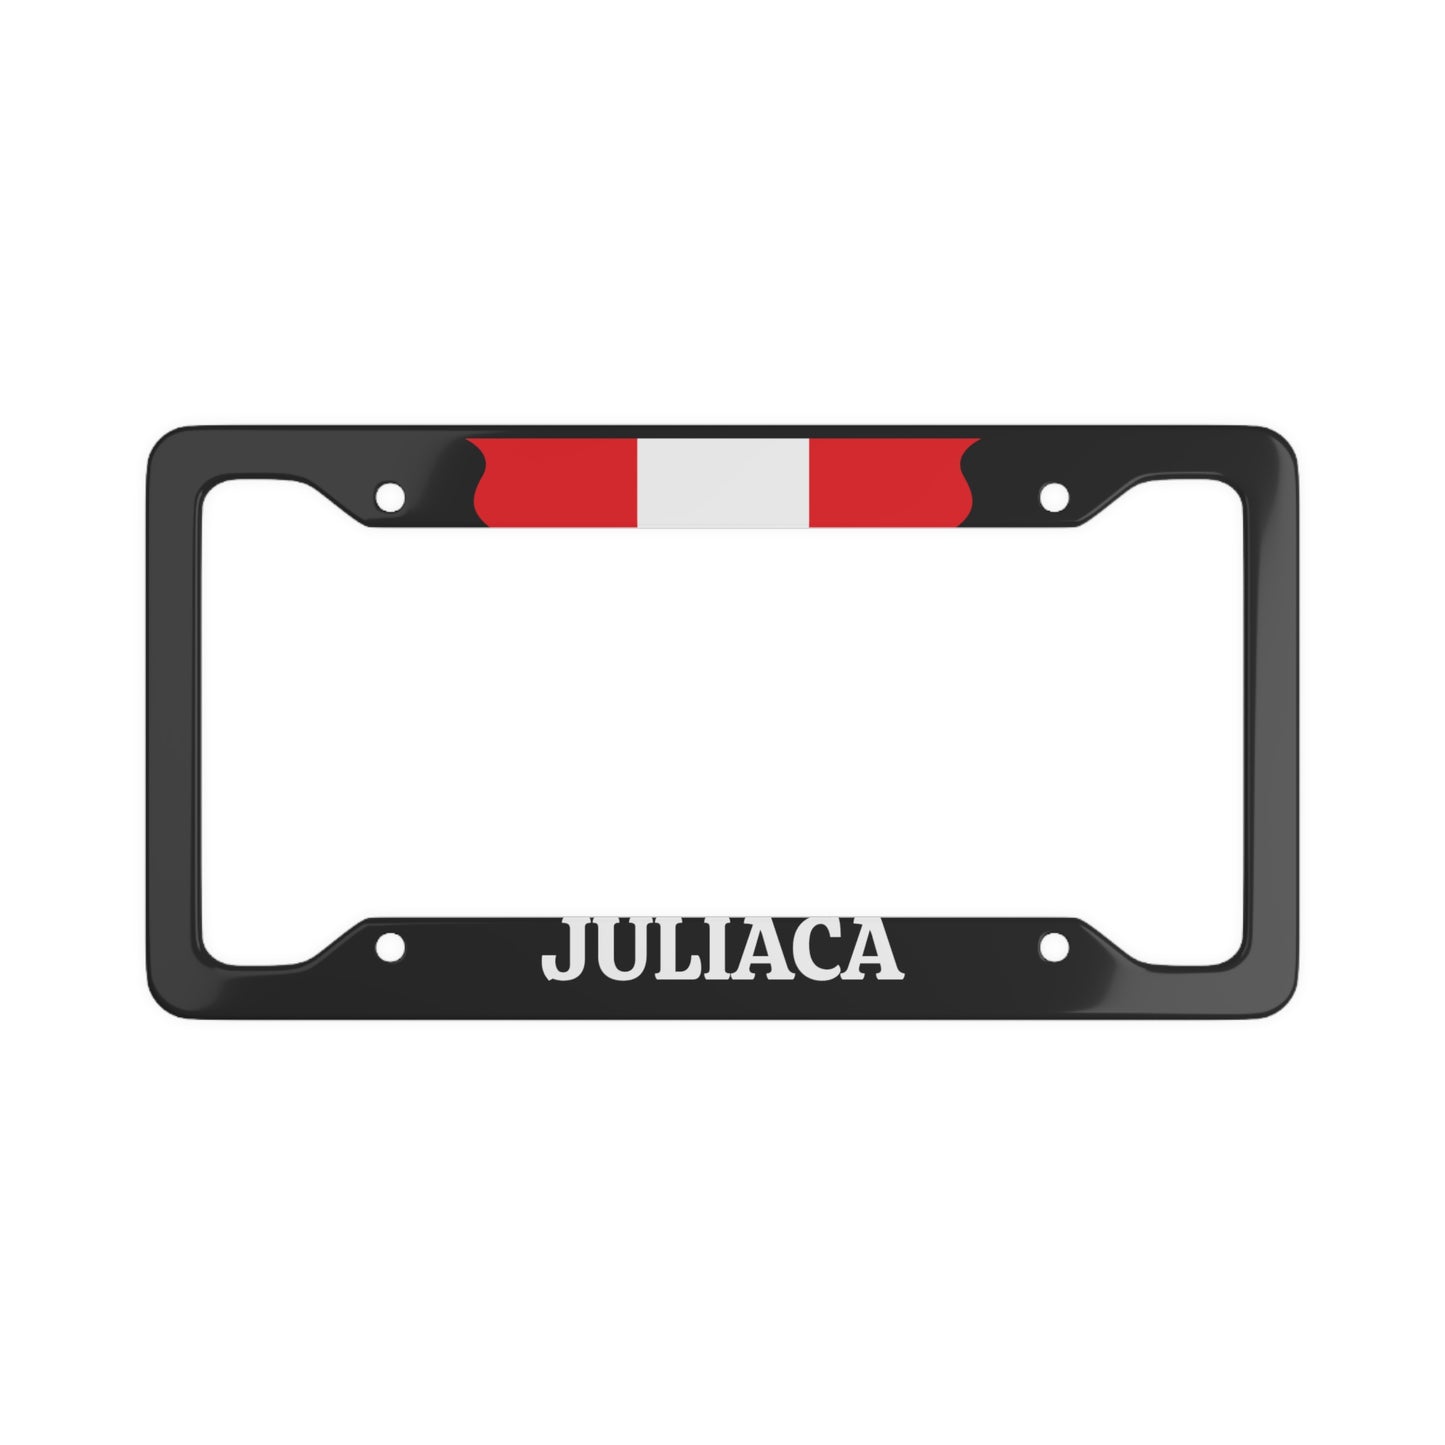 Juliaca, Peru Car Plate Frame